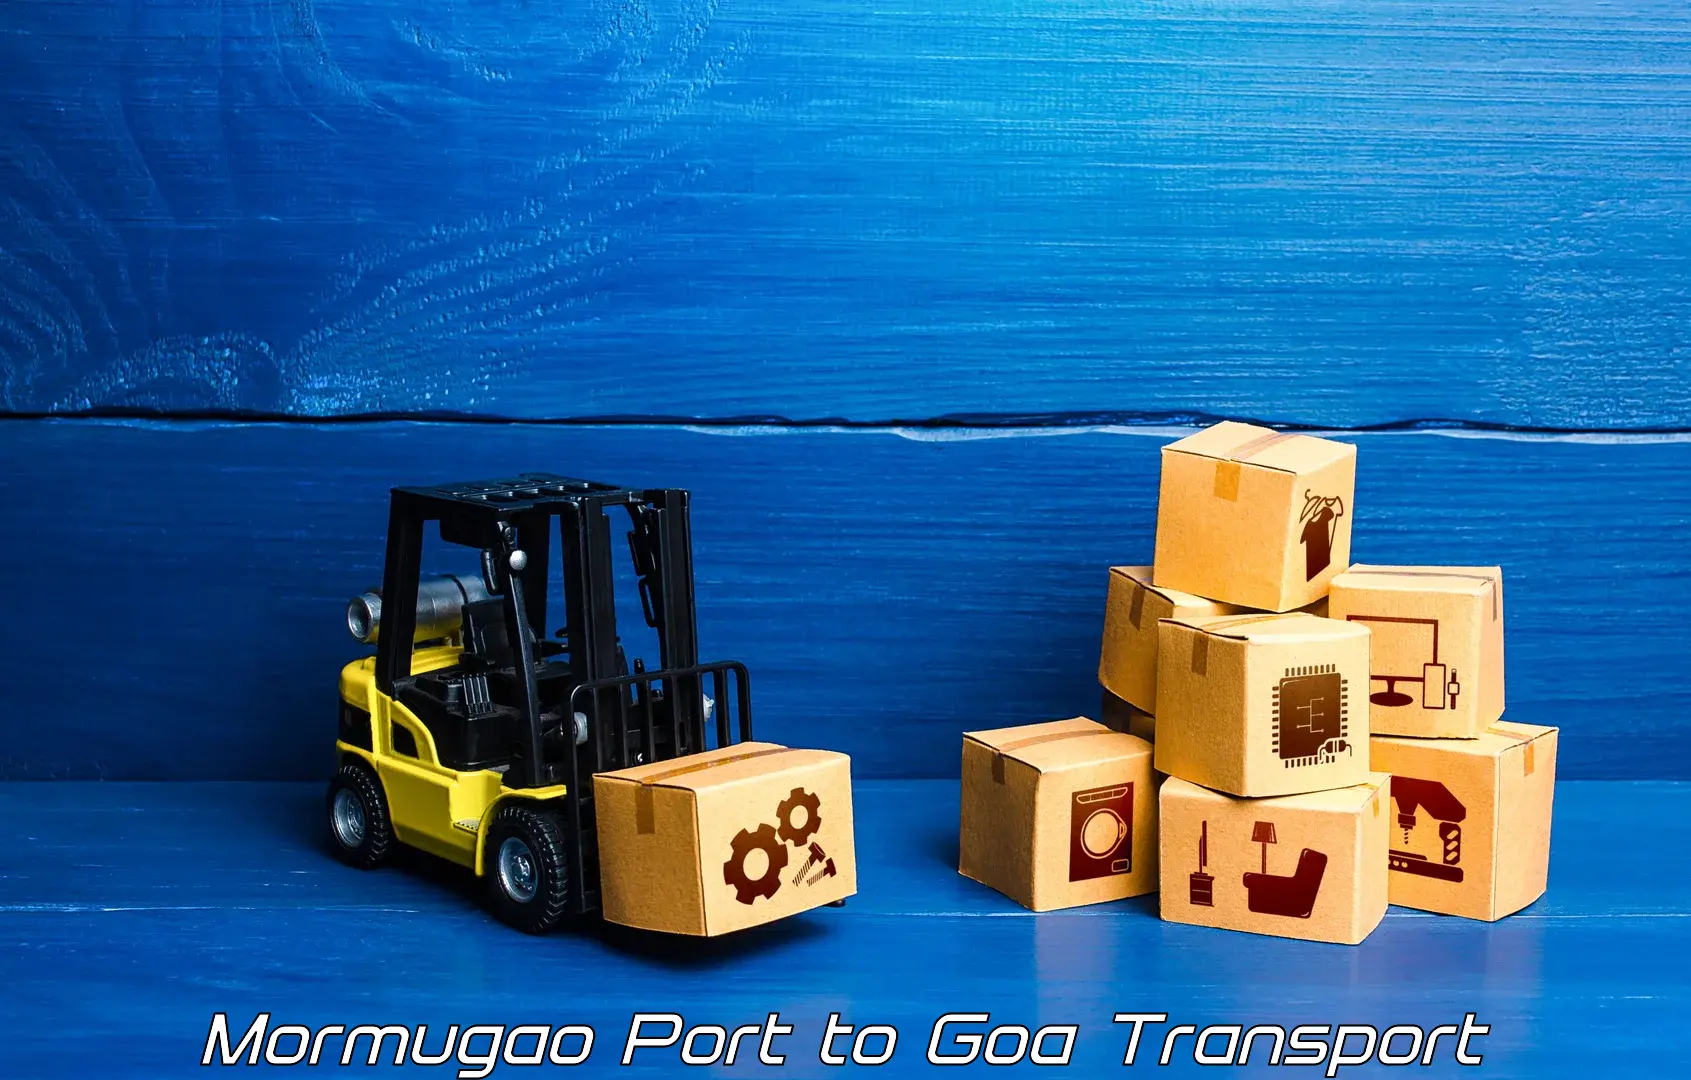 Air cargo transport services Mormugao Port to South Goa